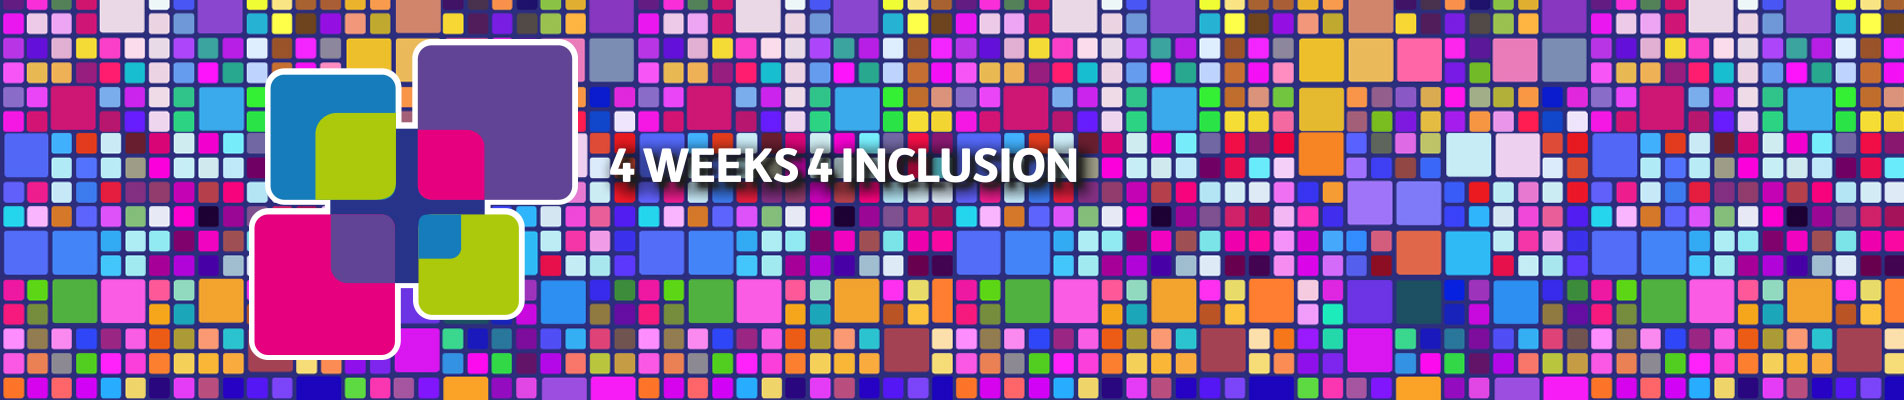 4W4I e Tecno: partecipiamo all’evento inclusivo più esclusivo dell’anno